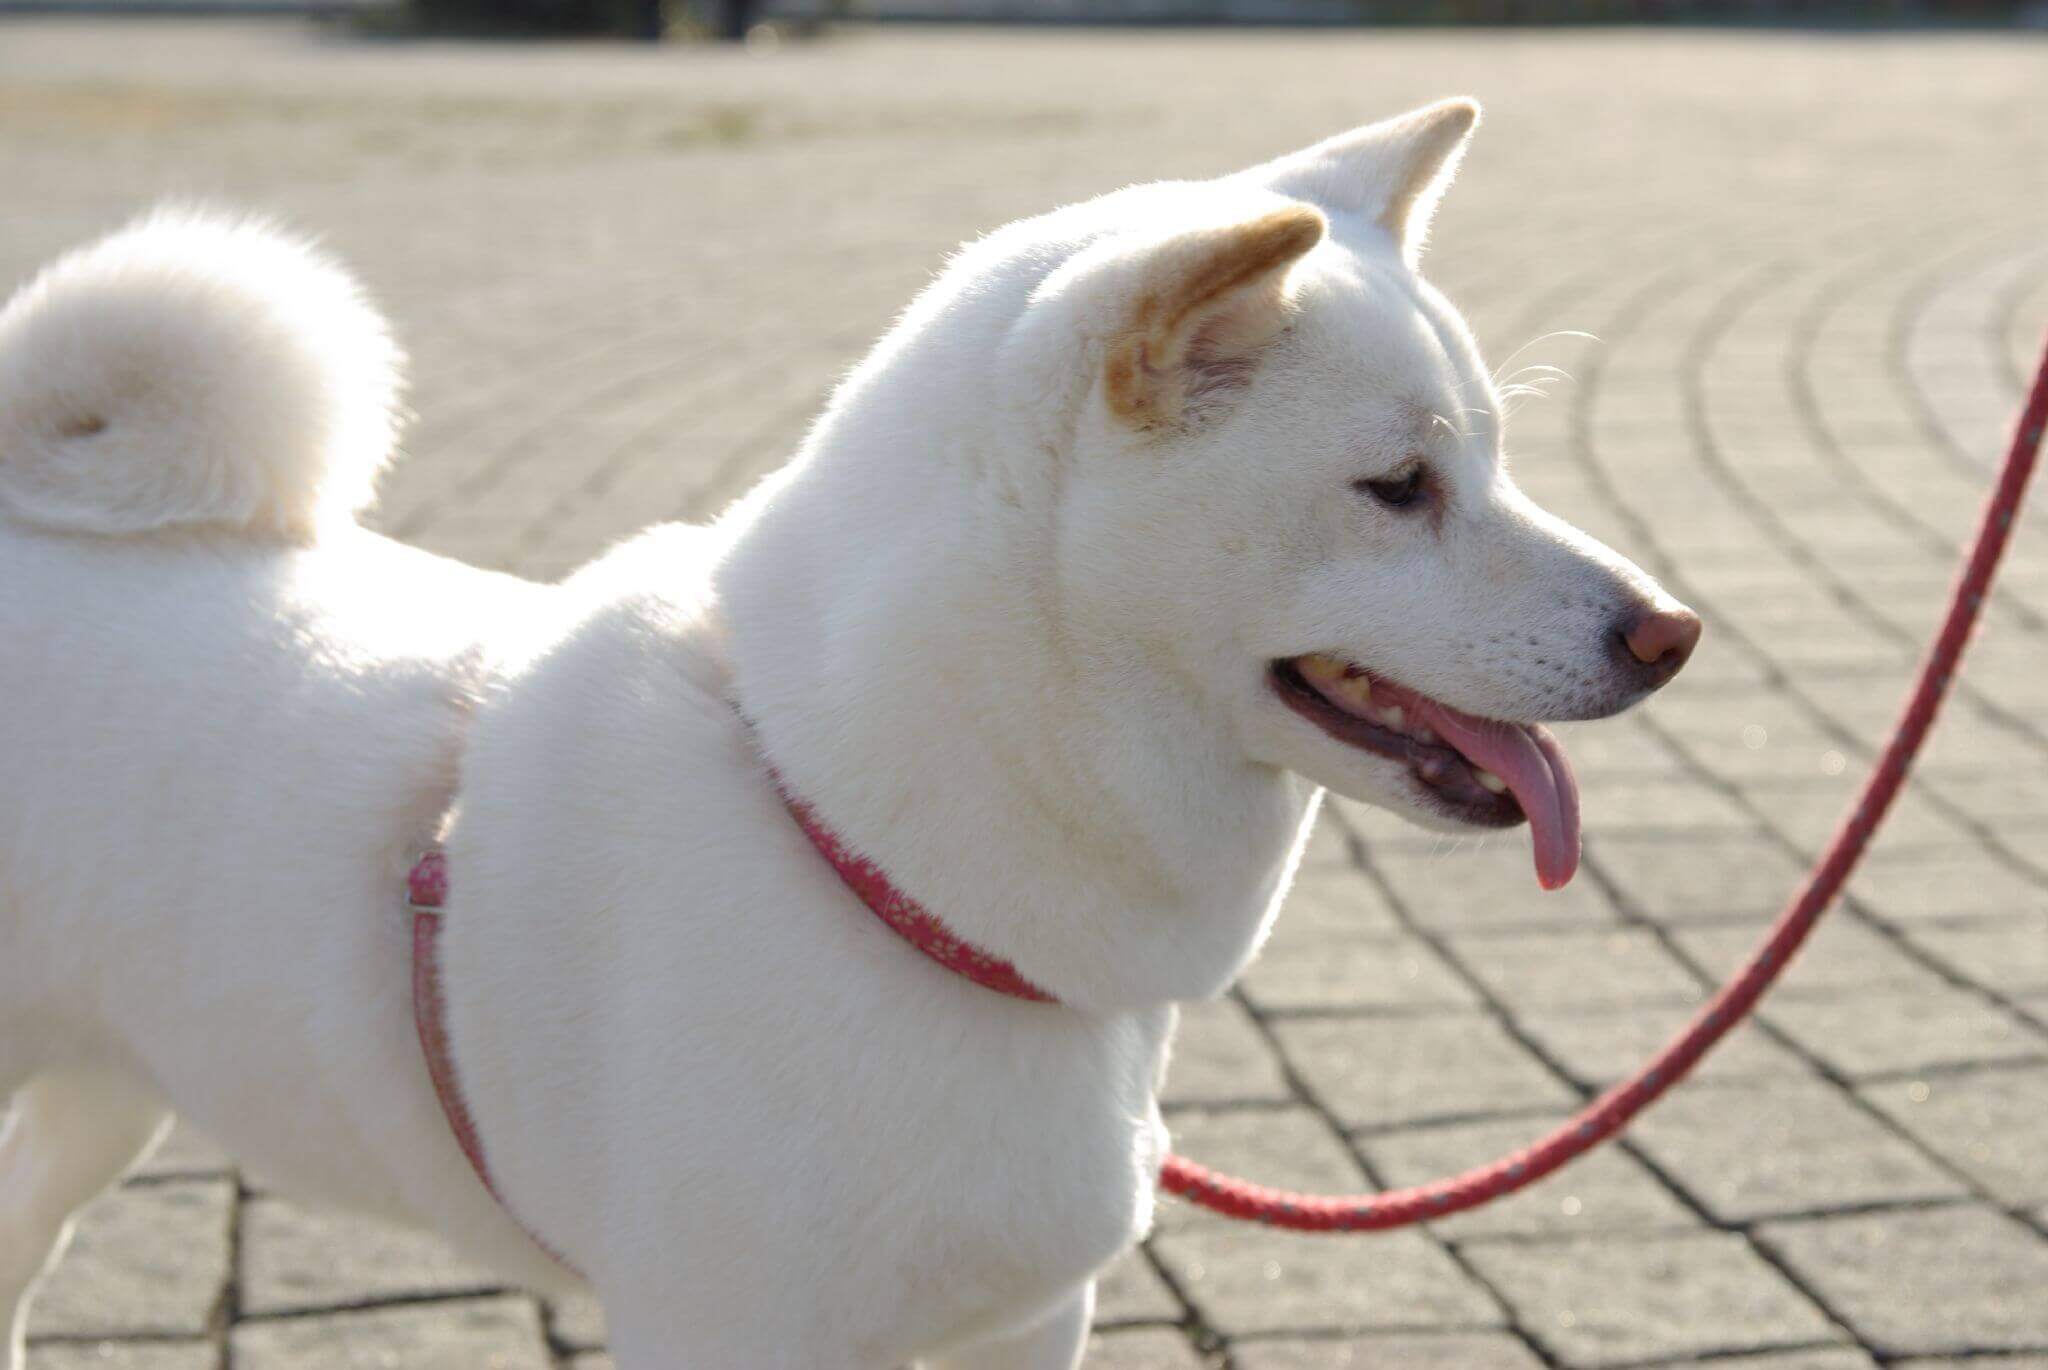 A white dog on a leash.